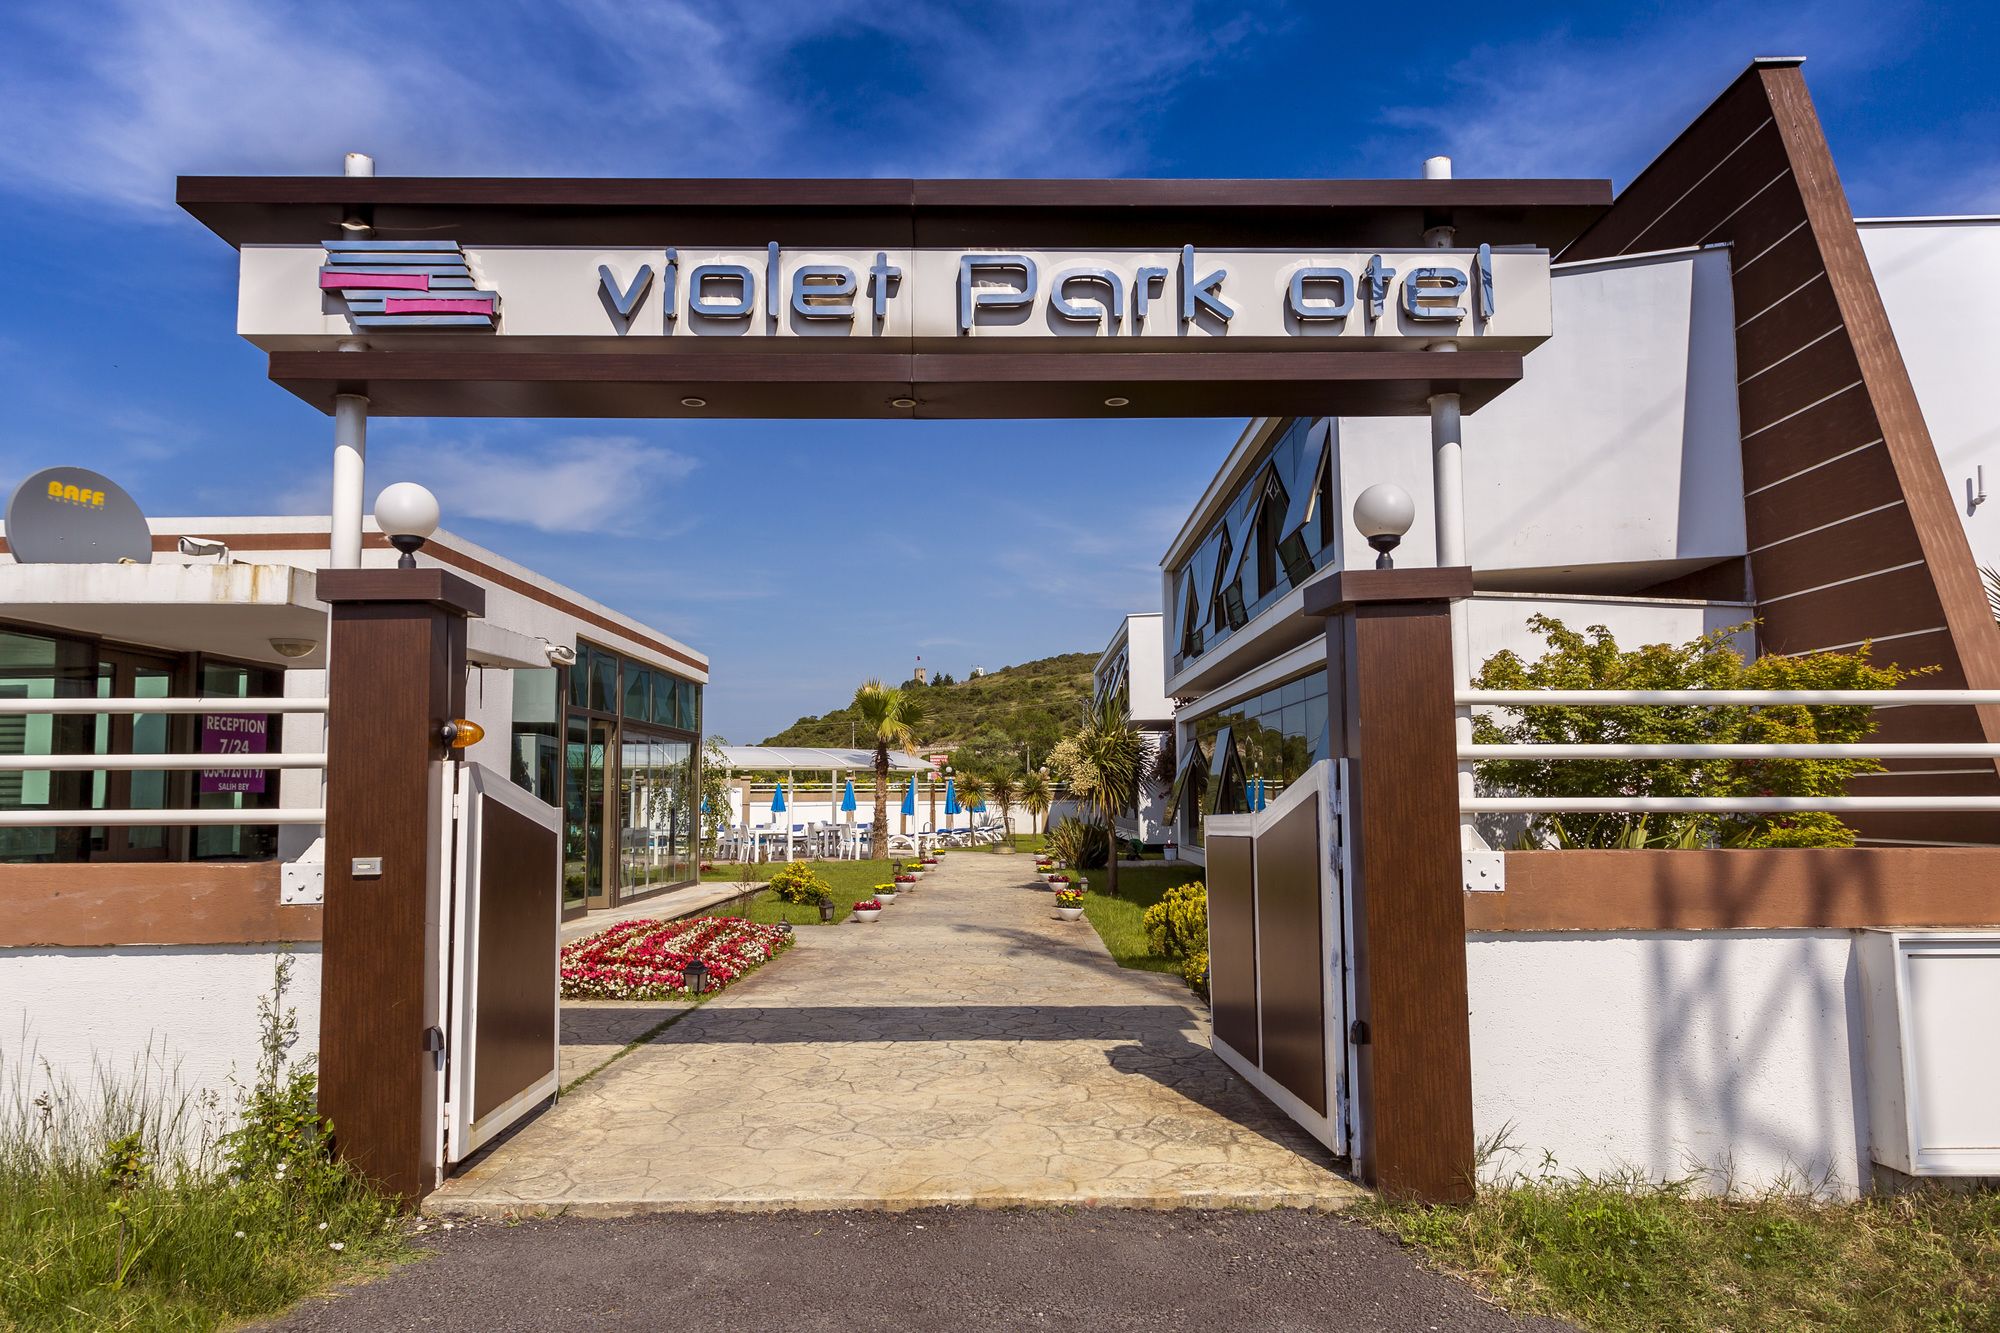 Violet Park Otel (Violet Park Hotel)